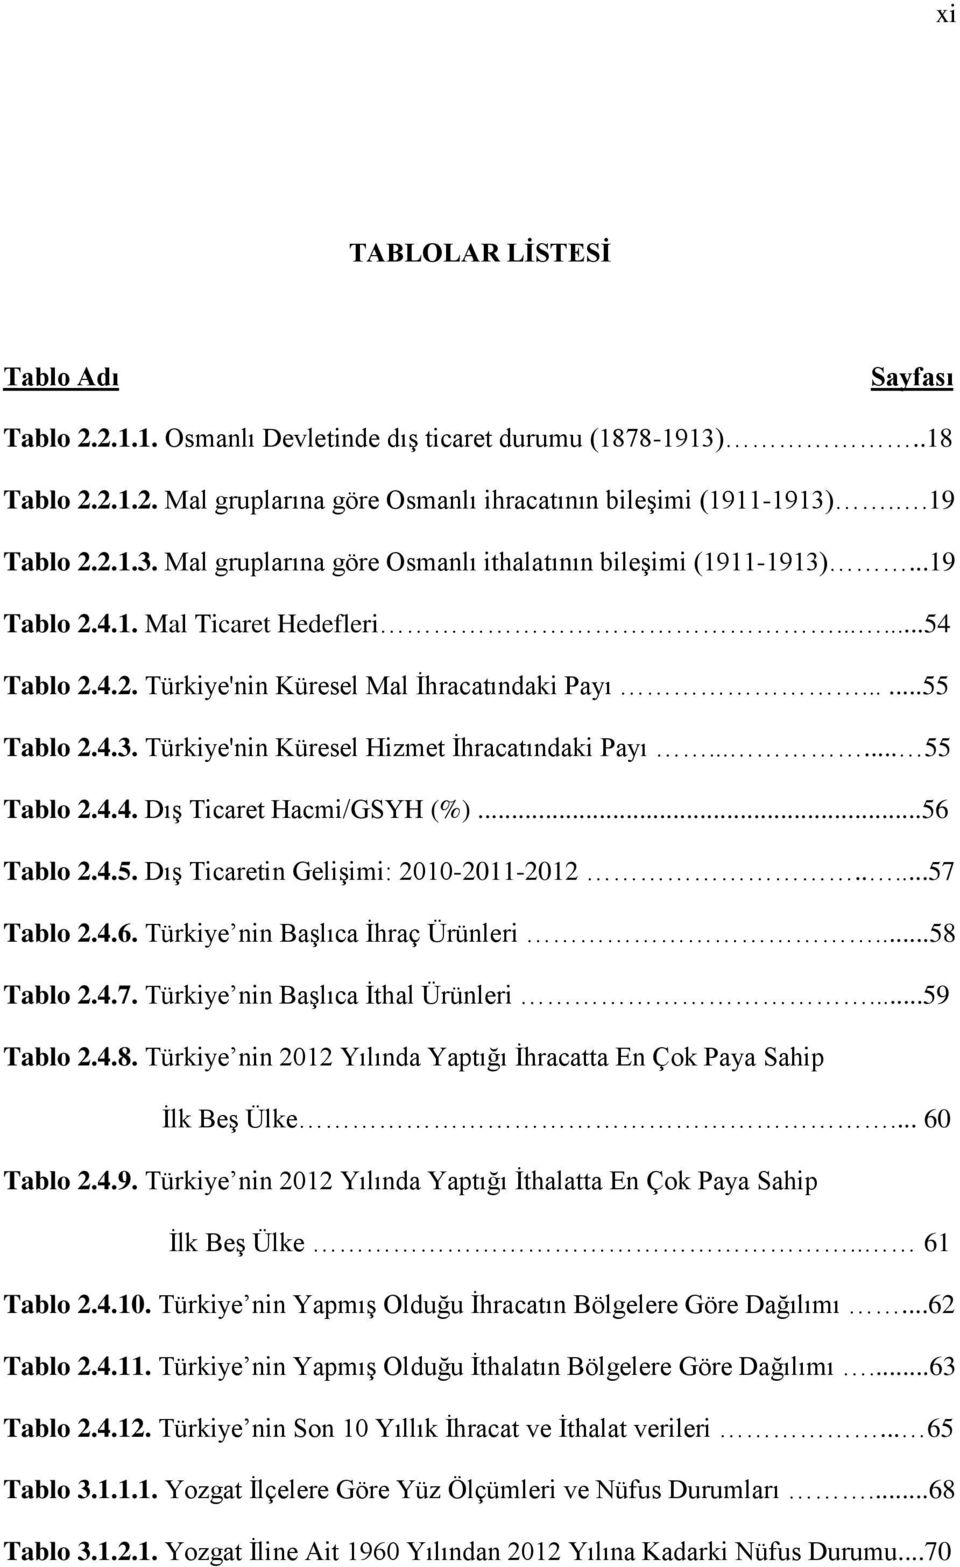 ..56 Tablo 2.4.5. Dış Ticaretin Gelişimi: 2010-2011-2012.....57 Tablo 2.4.6. Türkiye nin Başlıca İhraç Ürünleri...58 Tablo 2.4.7. Türkiye nin Başlıca İthal Ürünleri...59 Tablo 2.4.8. Türkiye nin 2012 Yılında Yaptığı İhracatta En Çok Paya Sahip İlk Beş Ülke.